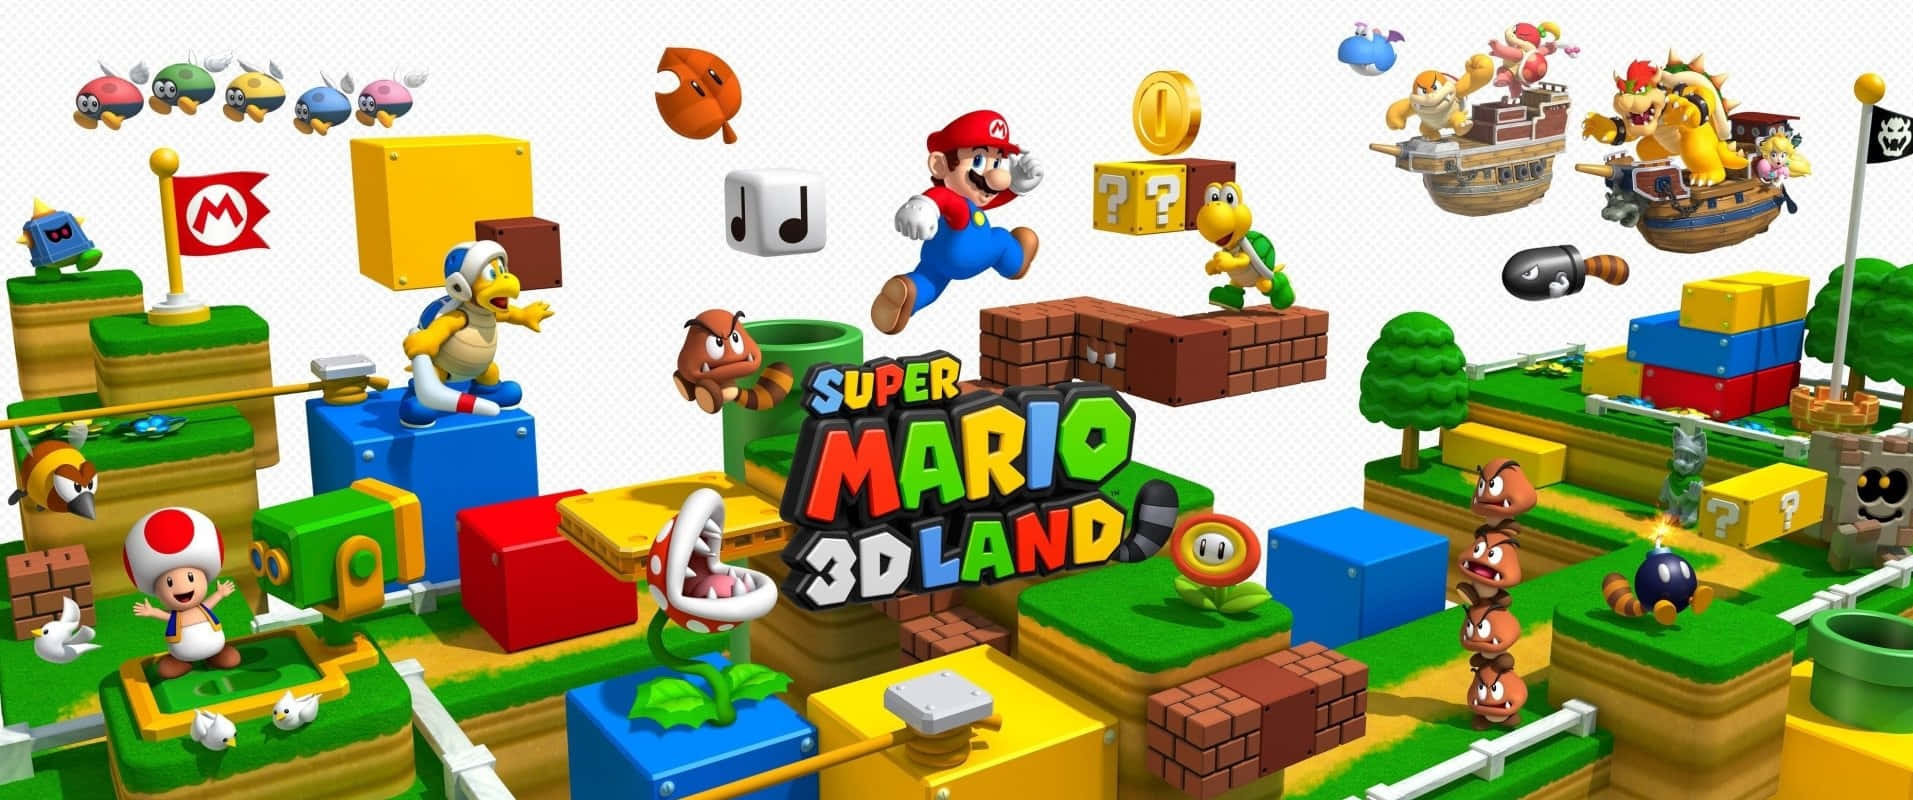 Åbn hemmelighederne indenfor Super Mario 3D World med denne livlige tapet. Wallpaper